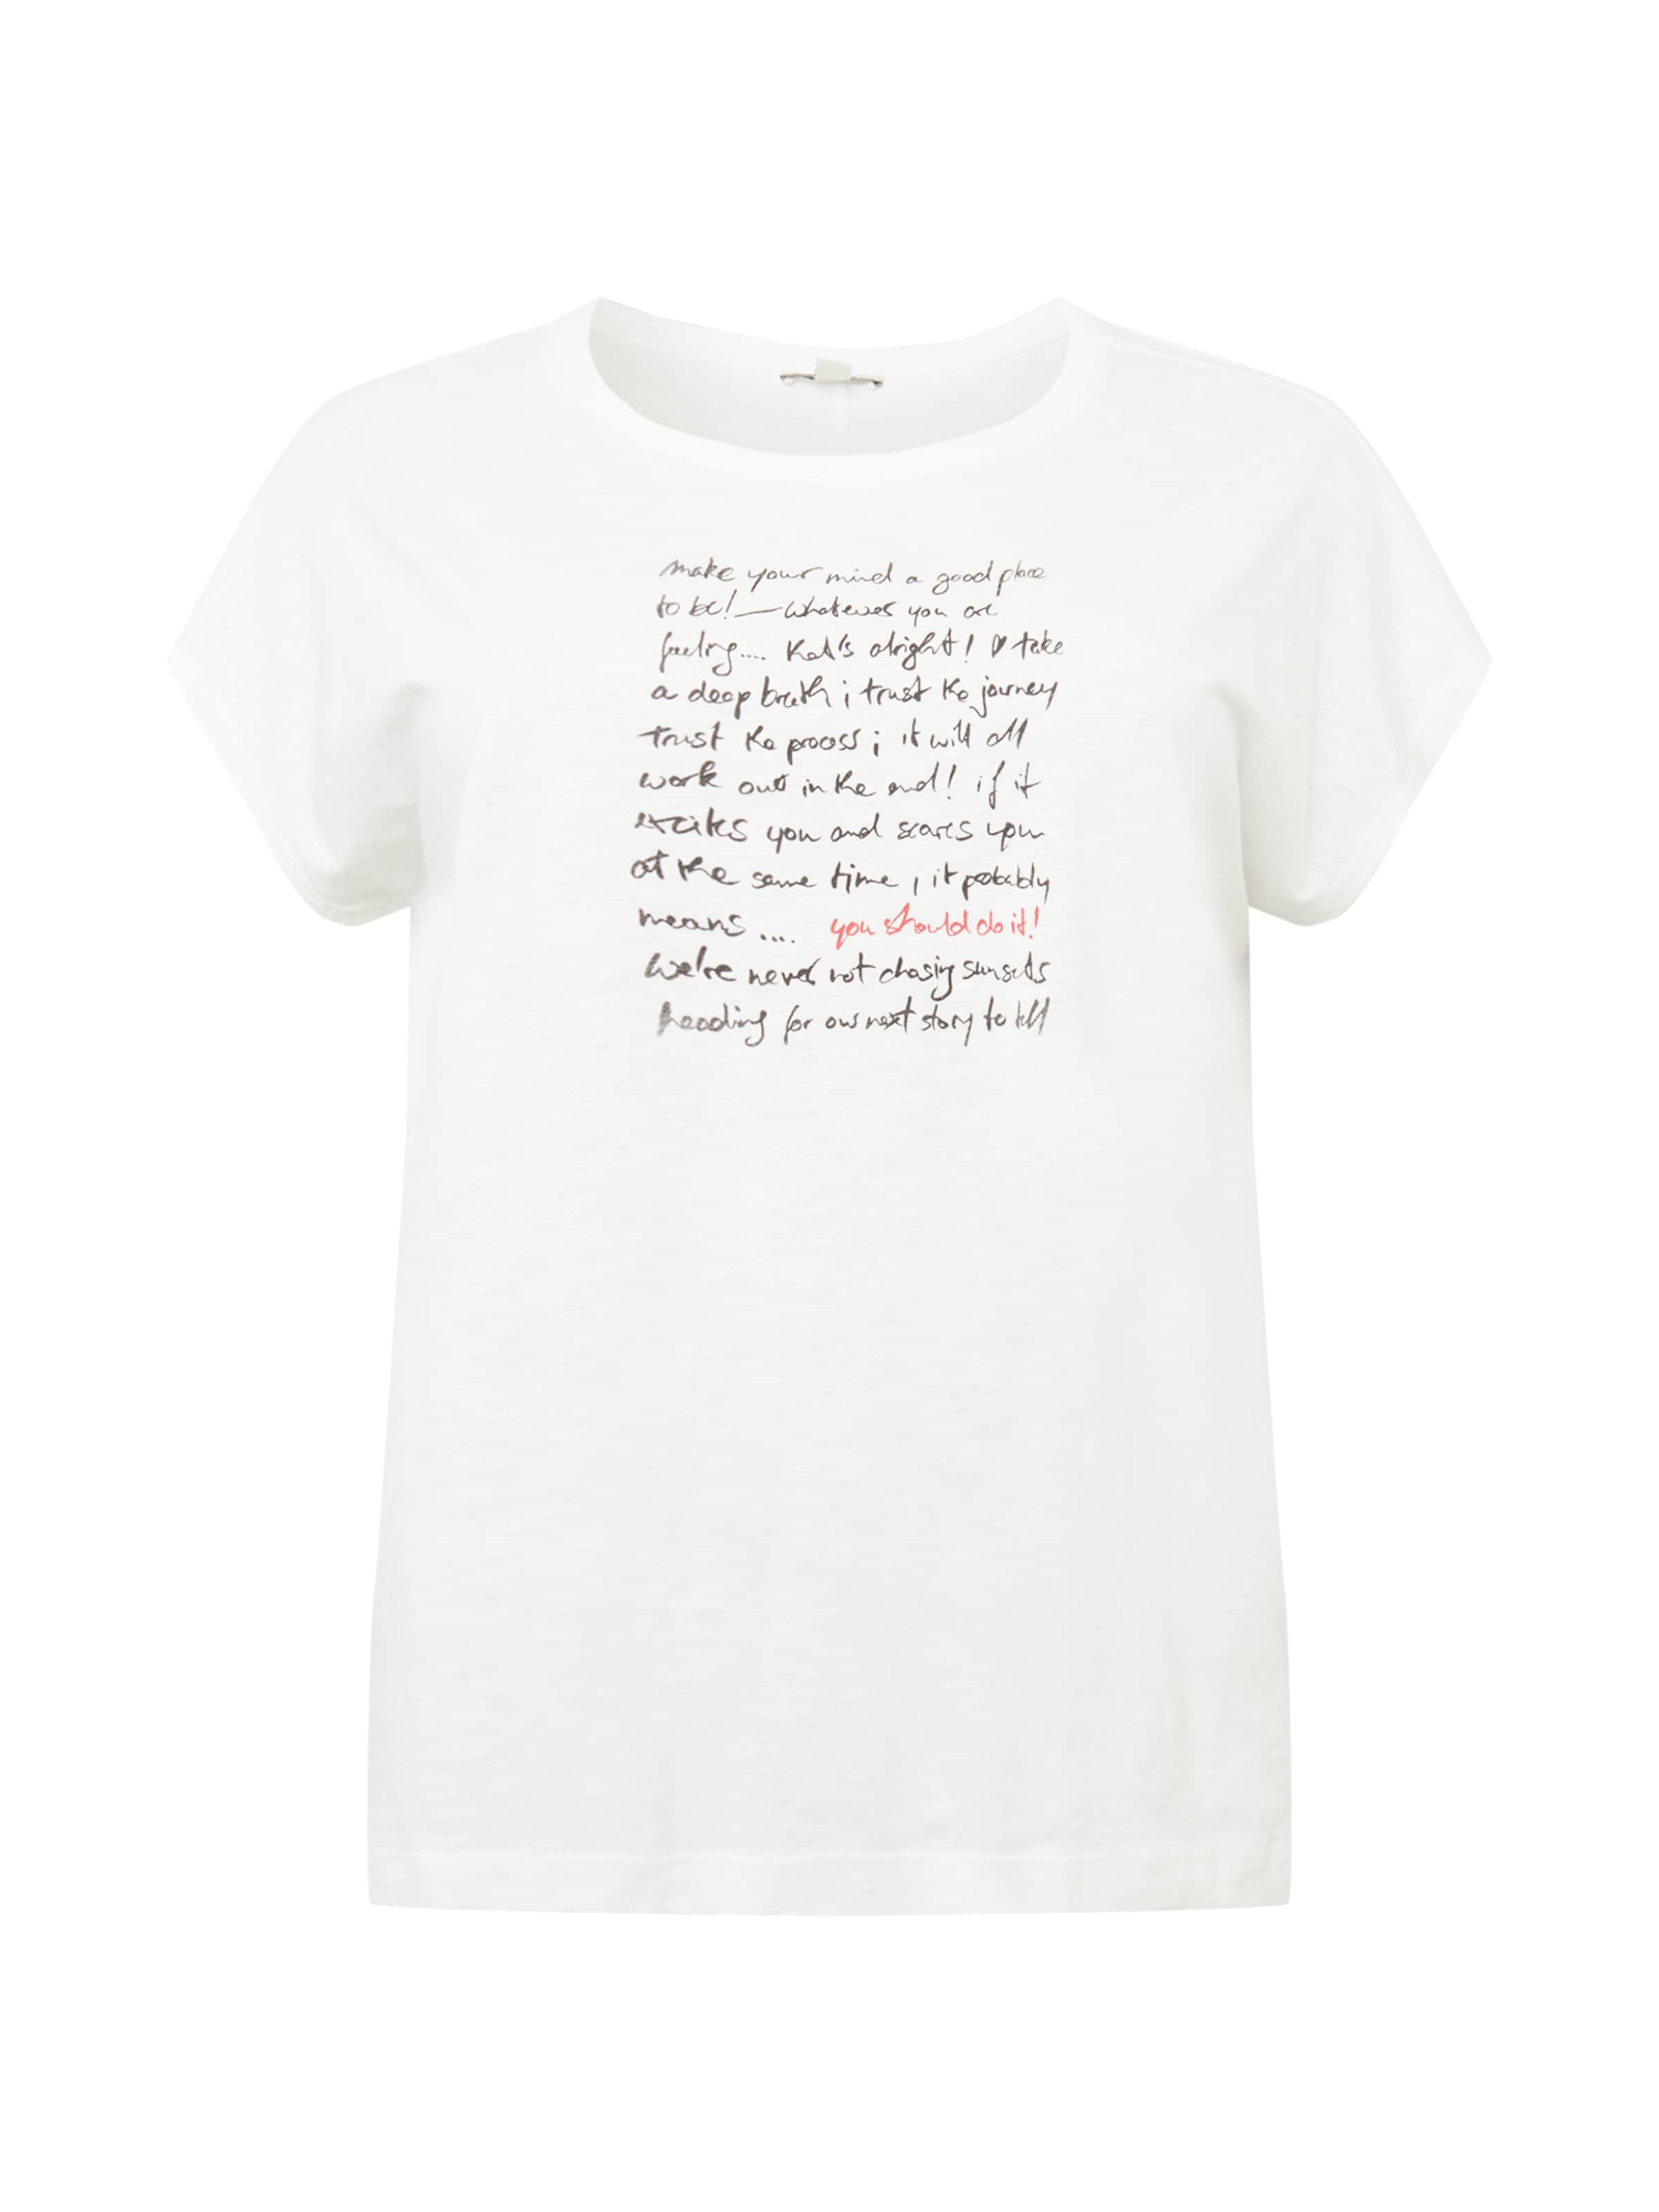 Frauen Shirts & Tops Esprit Curves T-Shirt in Offwhite - XL98419